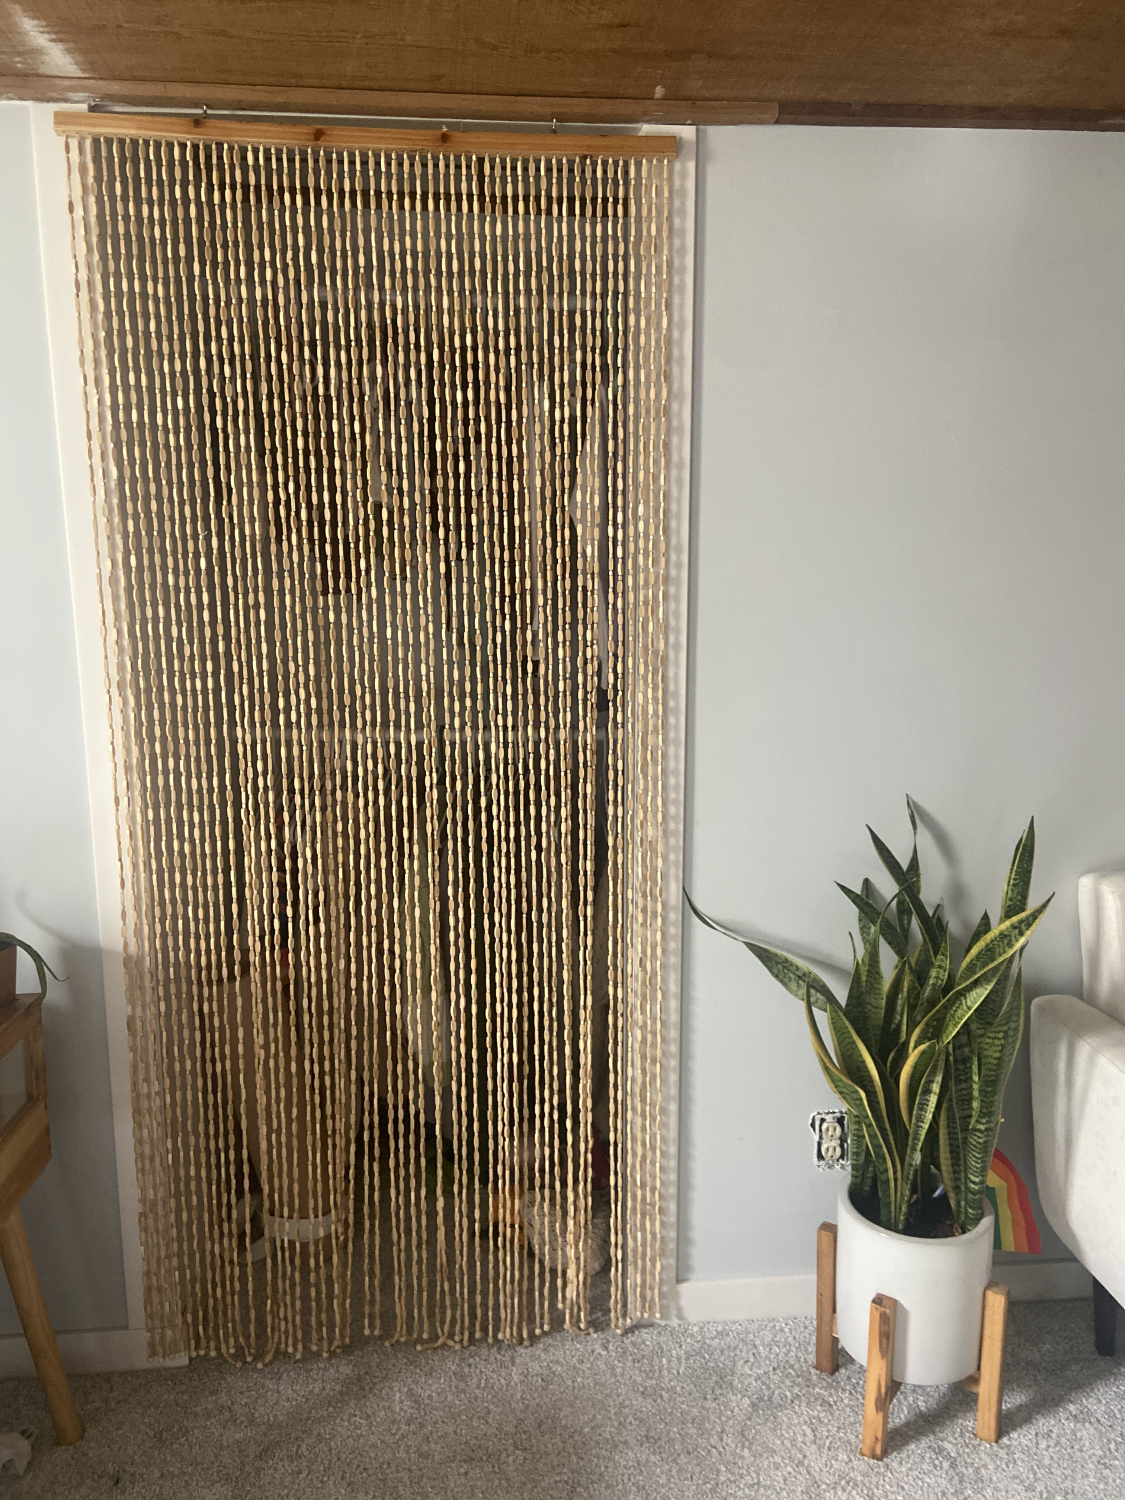 Natural Bamboo Beaded Curtain Natural Beads Window Doors Room Divider Shade Hang 